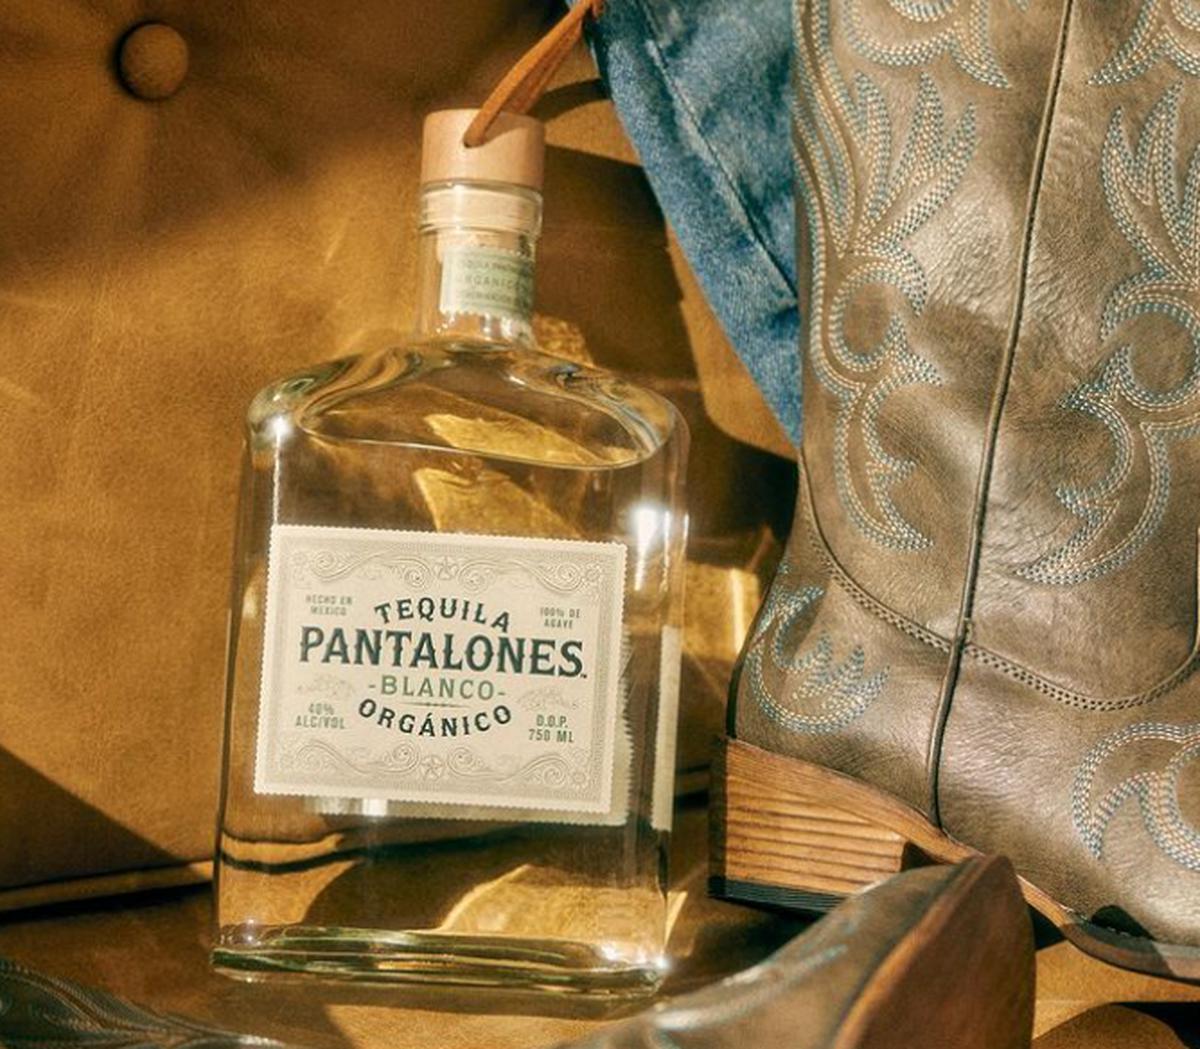 Pantalones | Fue el nombre elegido por el actor para su tequila
(Fuente: Instagram/@pantalonestequila)